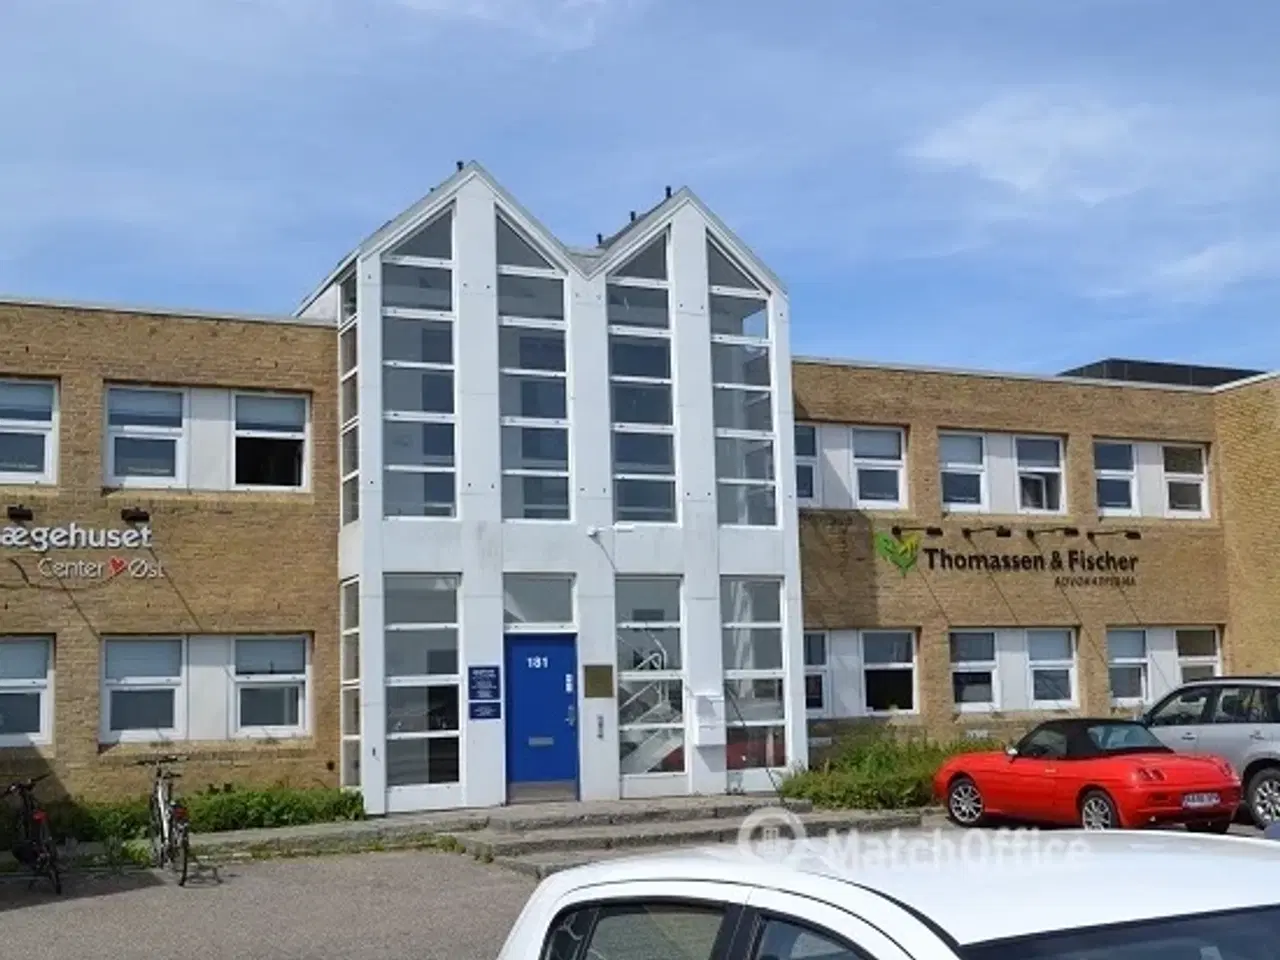 Billede 13 - Moderne kontorlokaler i Center Øst, Sønderborg.